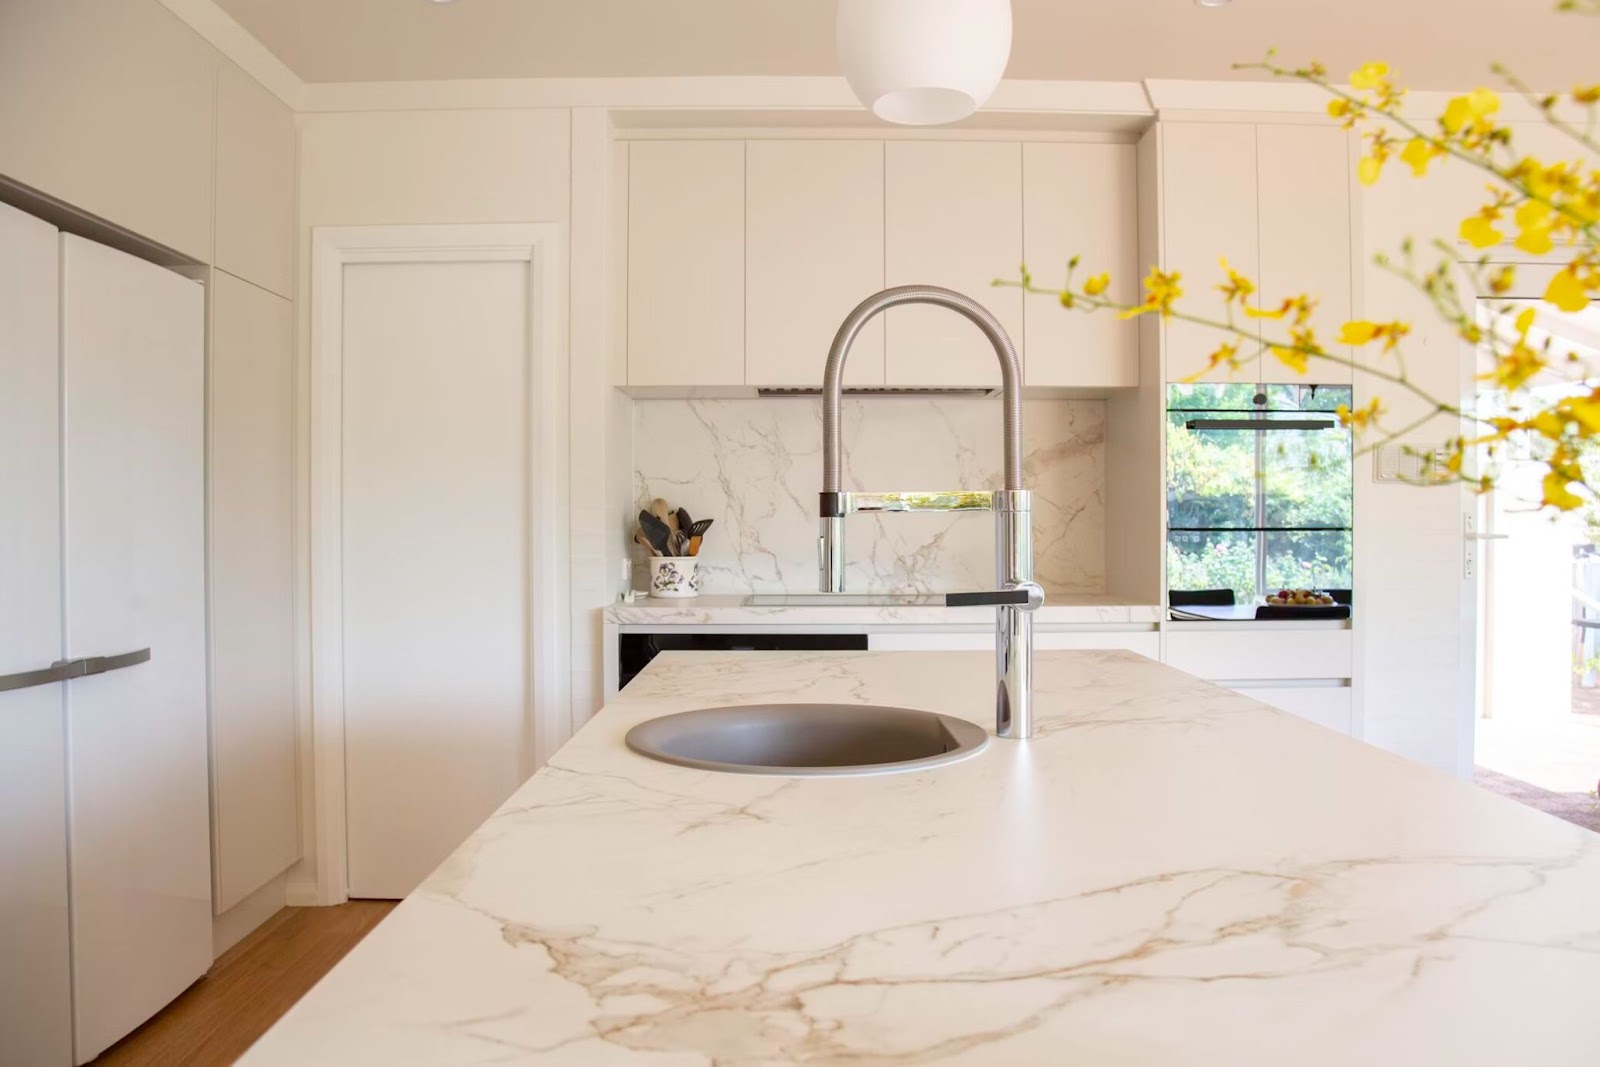 An image of kitchen sink interior design